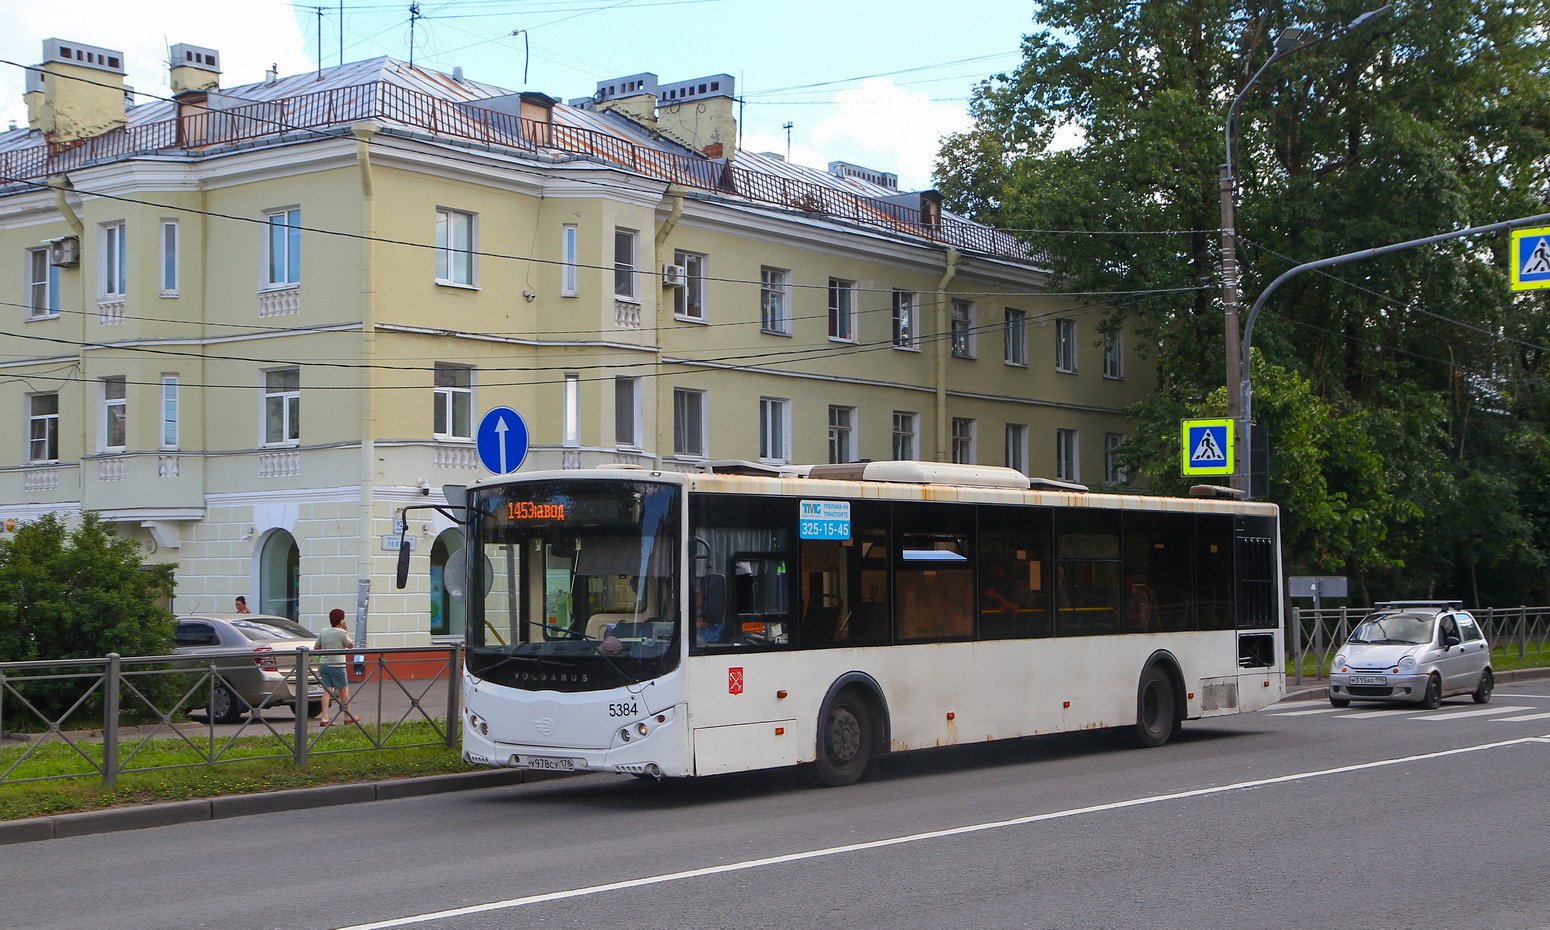 Saint Petersburg, Volgabus-5270.00 # 5384